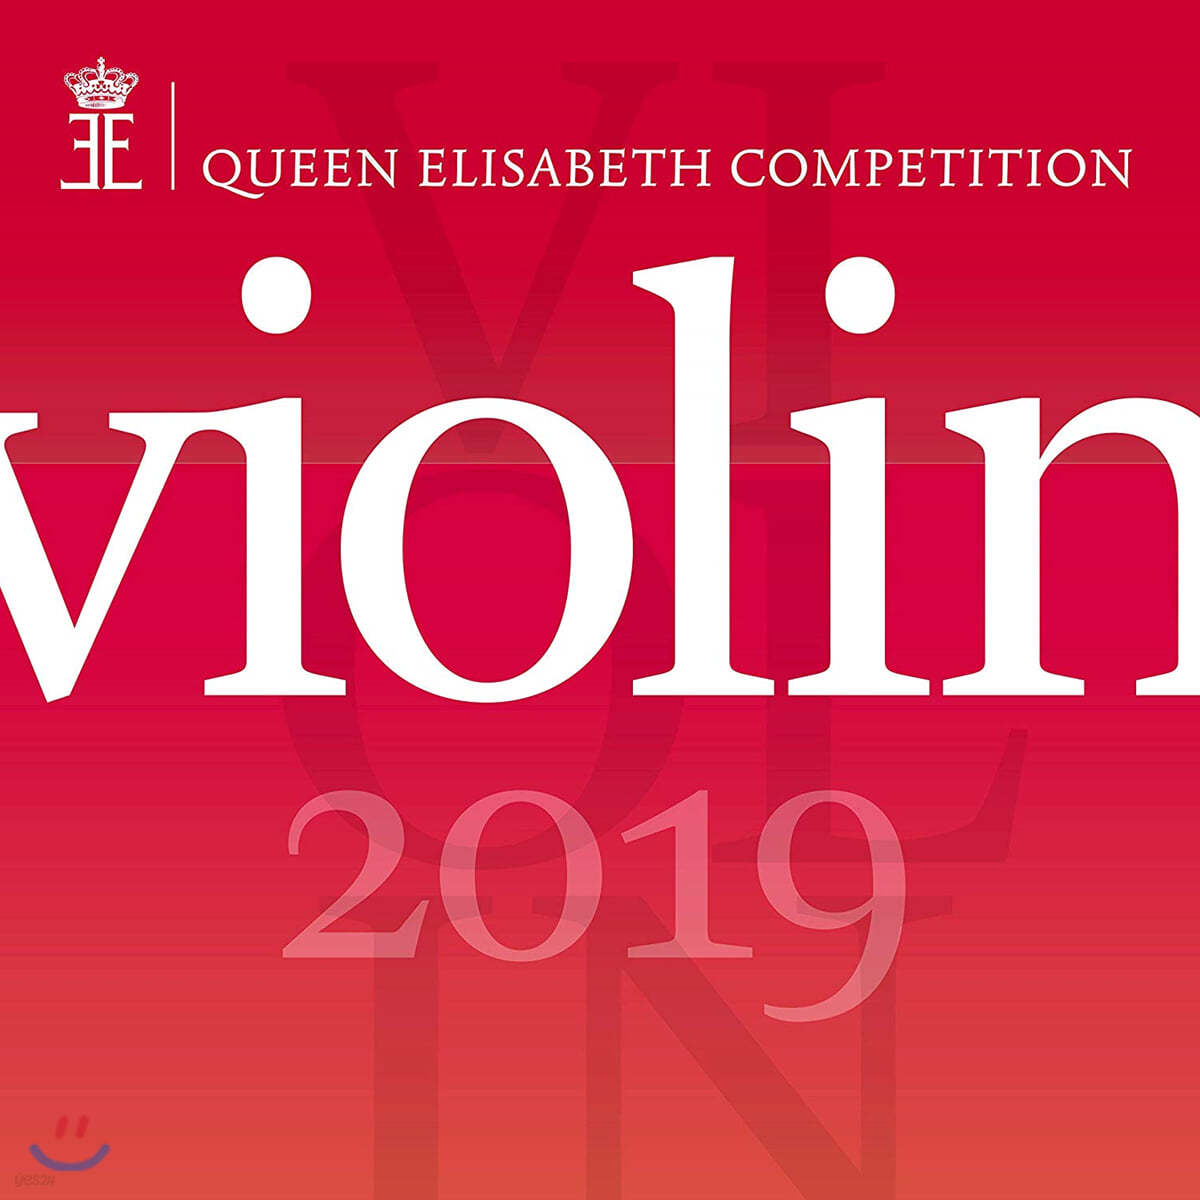 2019년 퀸 엘리자베스 콩쿠르 - 바이올린 (Queen Elisabeth Competition - Violin 2019)